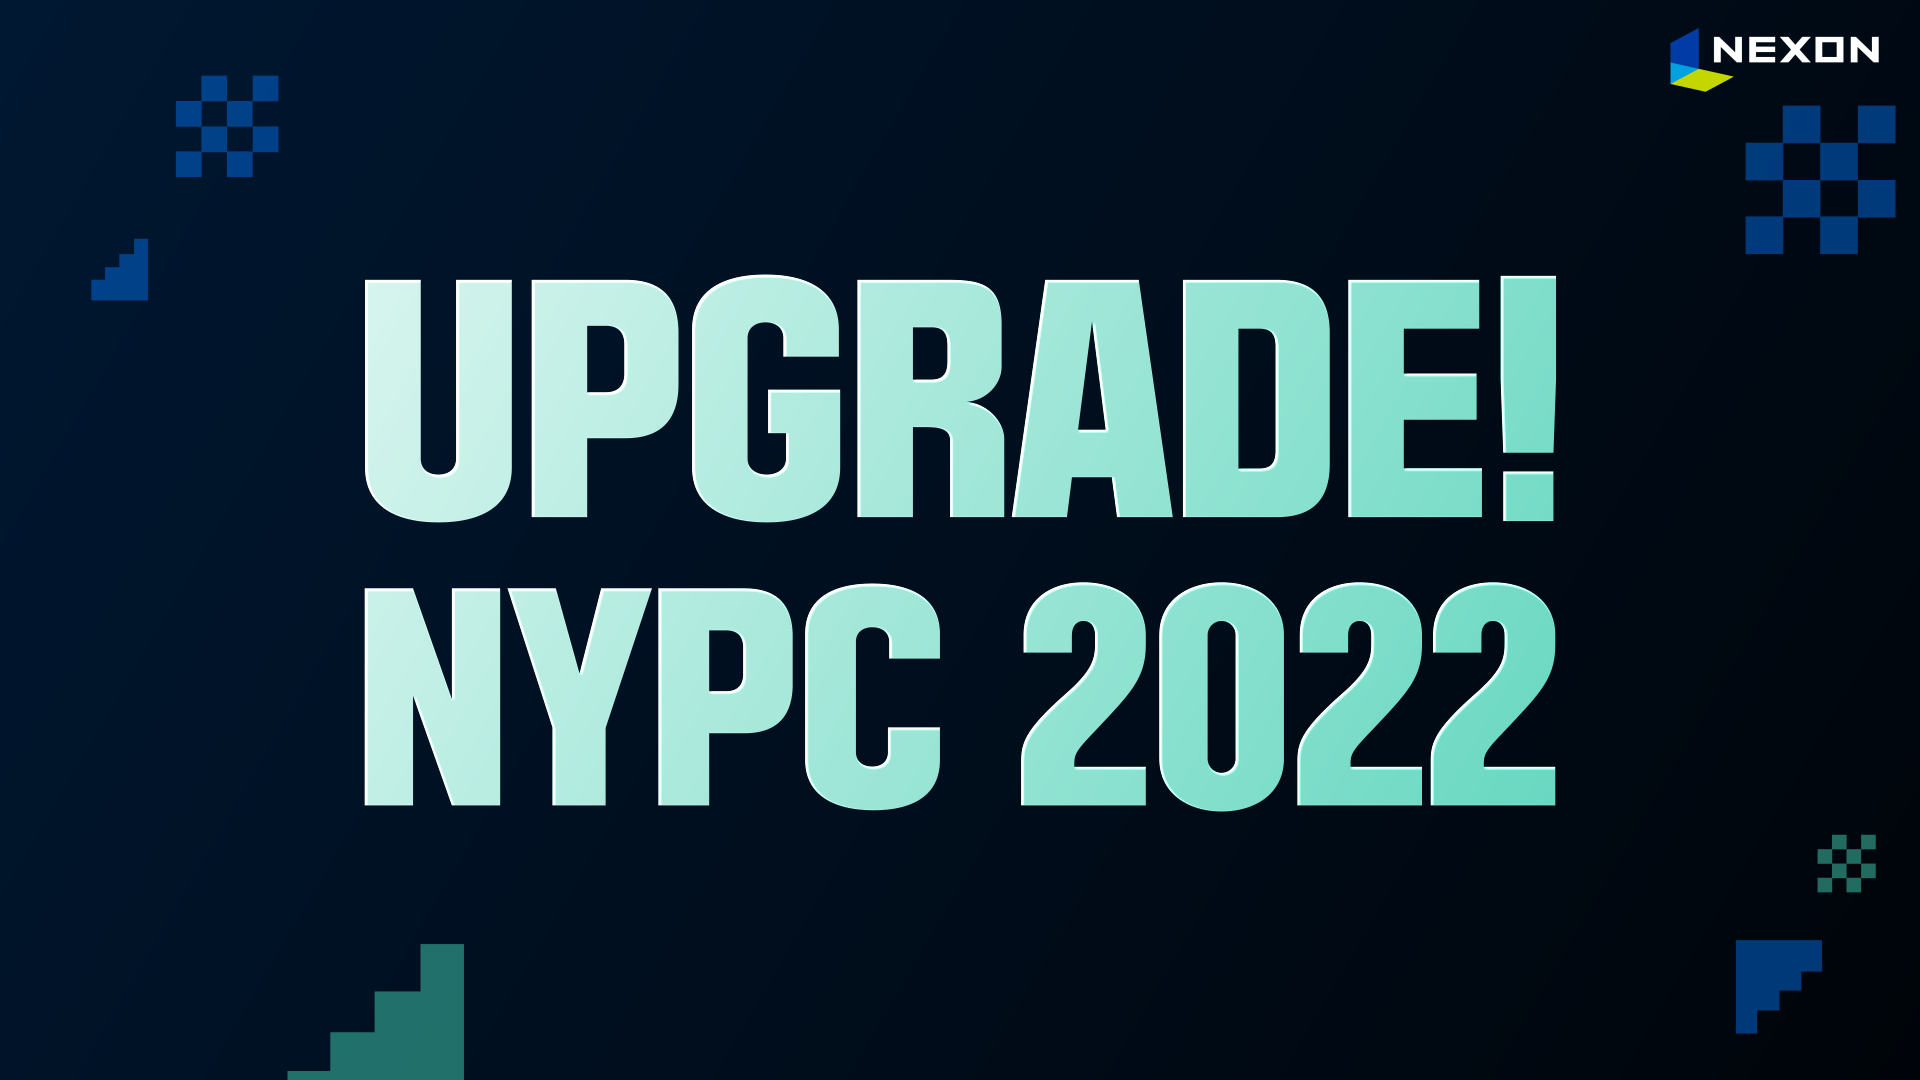 [NYPC 2022] 한눈에 알아보는 NYPC 2022 튜토리얼!